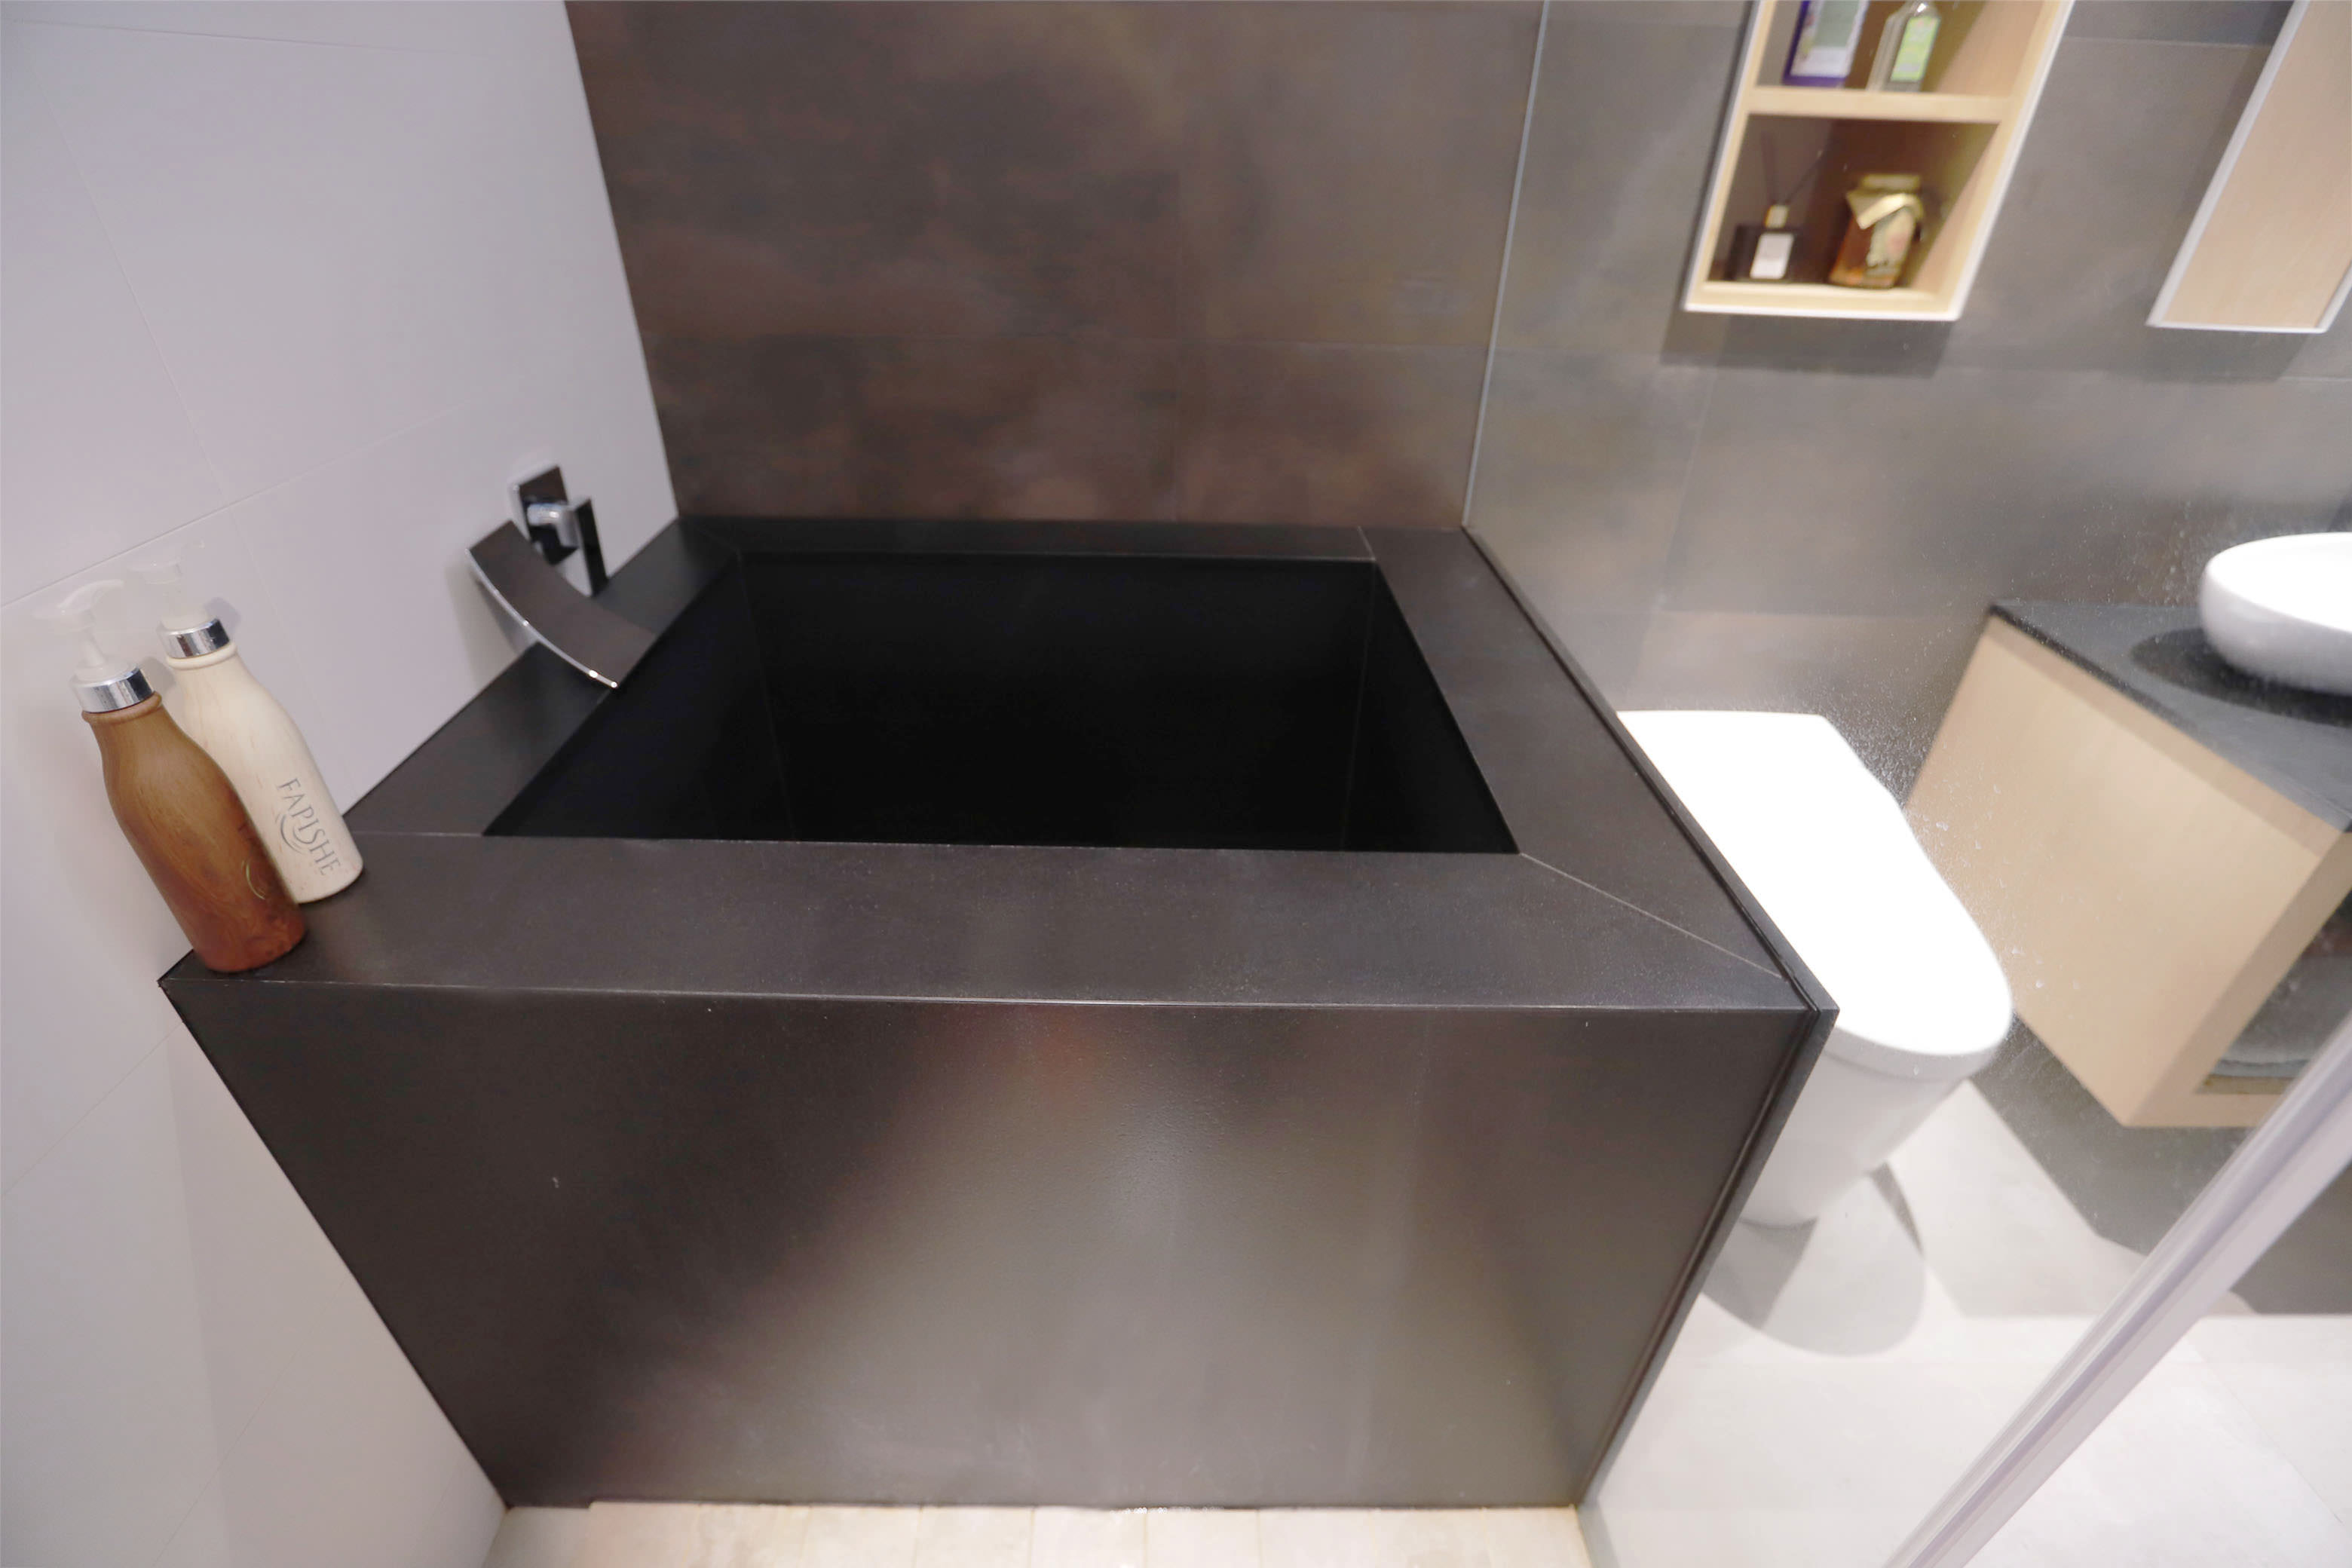 [50年老屋翻新] 我的主浴❤廁所/衛浴大改造,結合超強收納與化妝台的浴室空間-室內設計裝潢